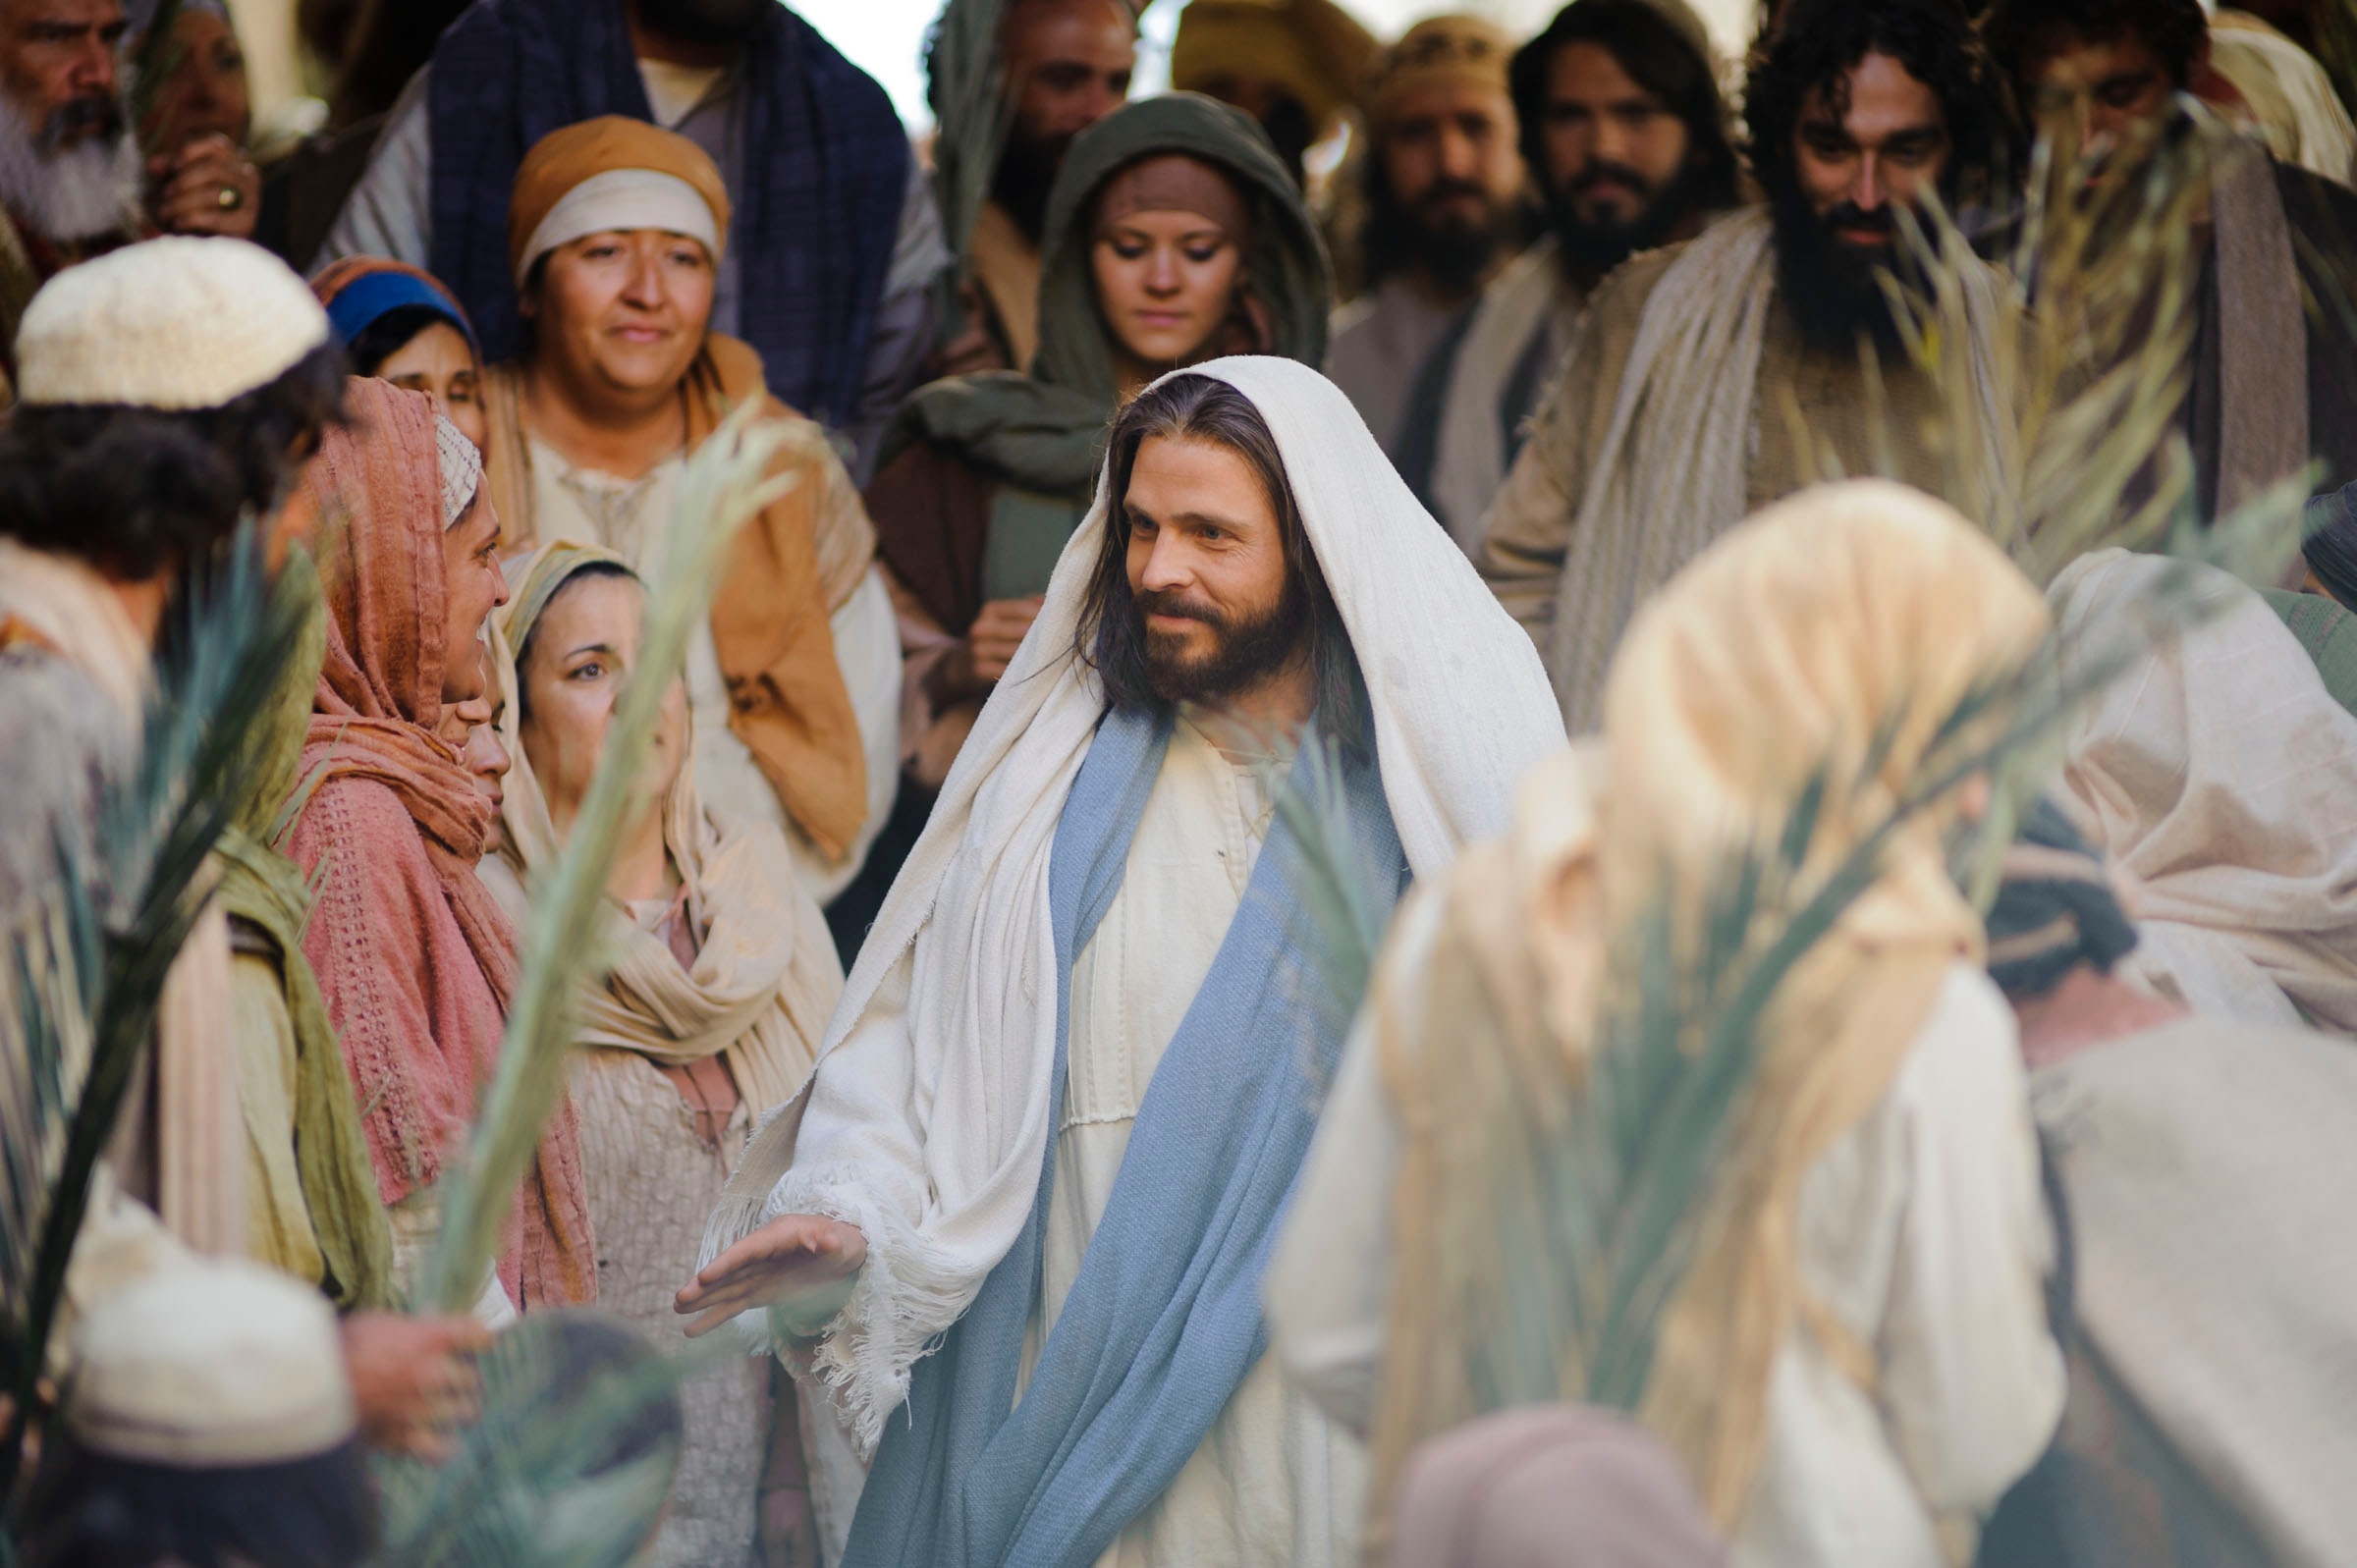 Matthew 21:1–11, Jesus enters Jerusalem on a donkey